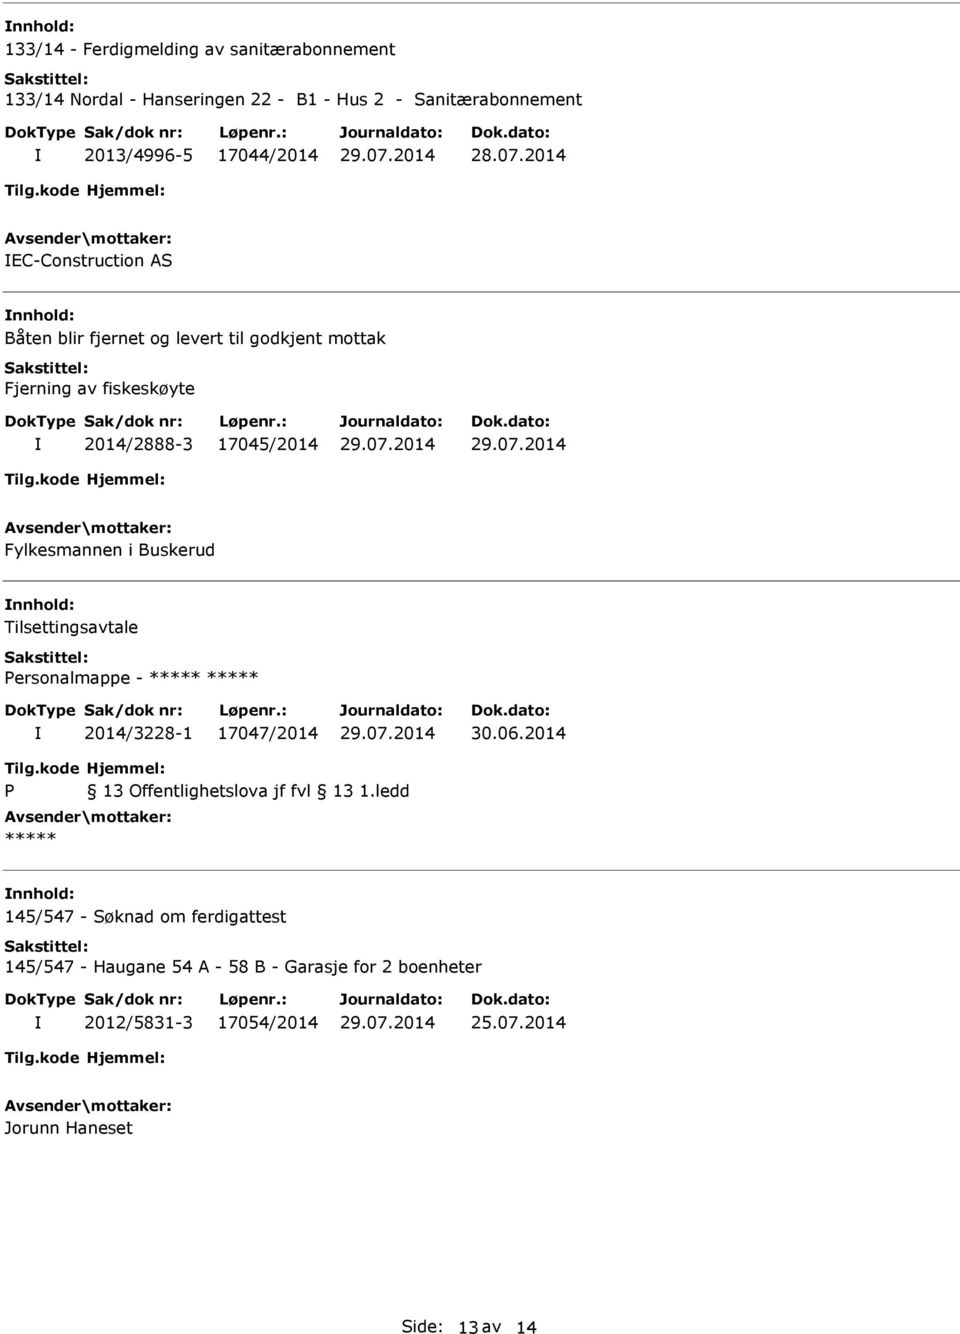 Buskerud Tilsettingsavtale Personalmappe - 2014/3228-1 17047/2014 30.06.2014 P 13 Offentlighetslova jf fvl 13 1.